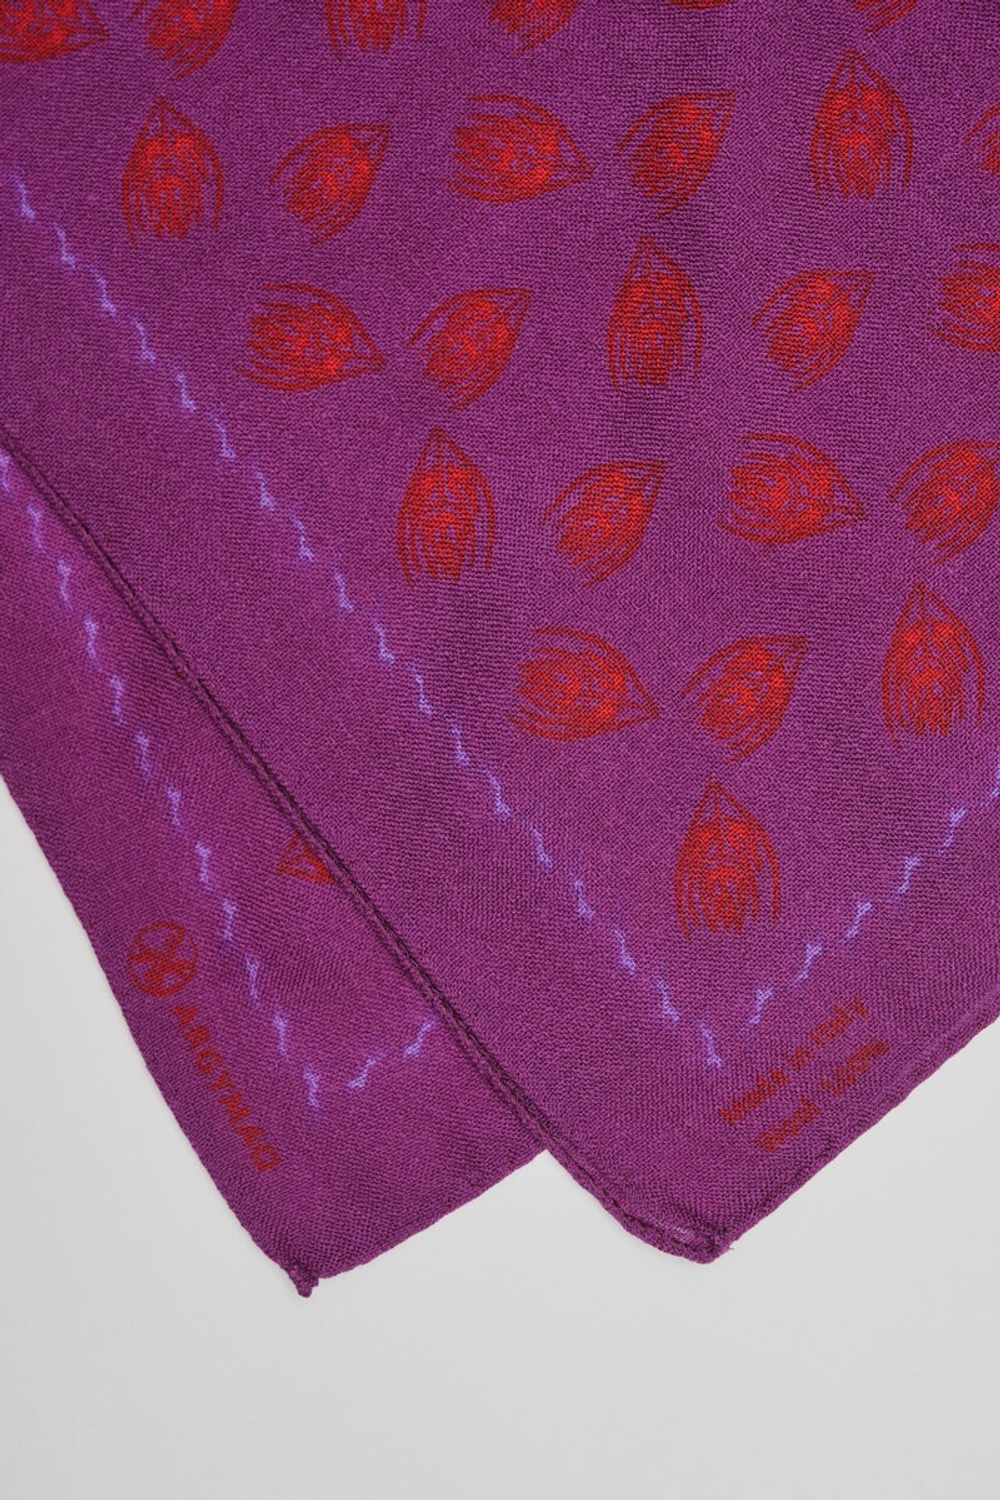 Шерстяной платок Ласточка и тюльпан VIOLET 70×70